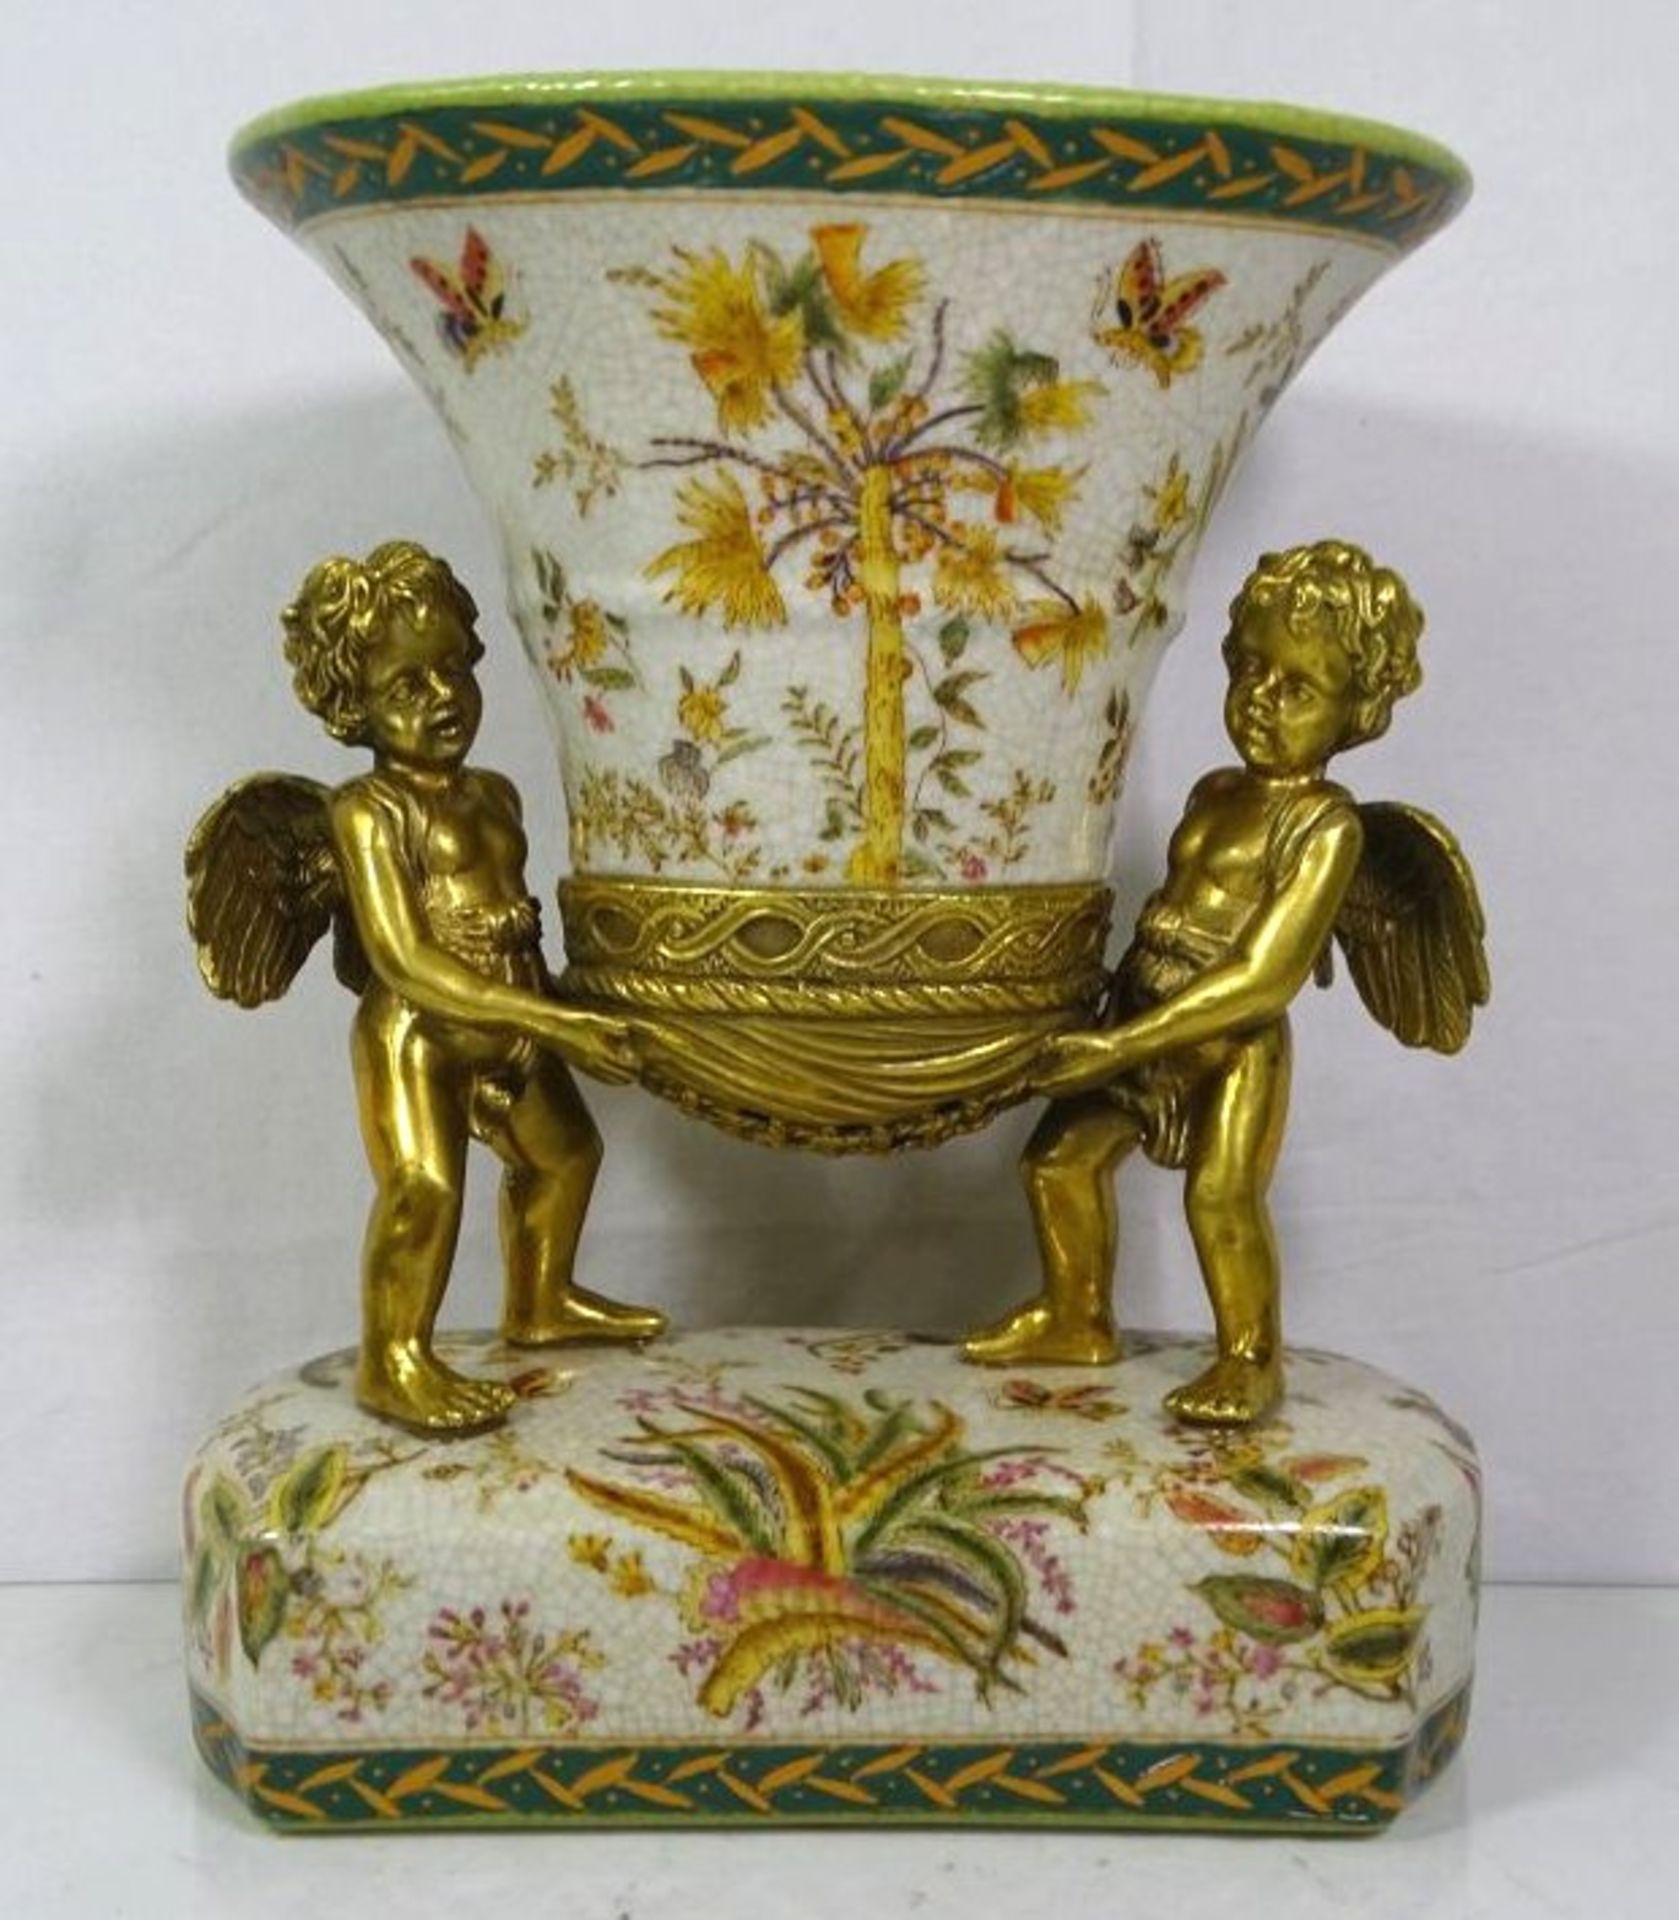 Vase getragen von 2 Bronze Putti, florale Bemalung, gemarkt, 20. Jhd., H-26cm B-24cm T-16cm.- - -